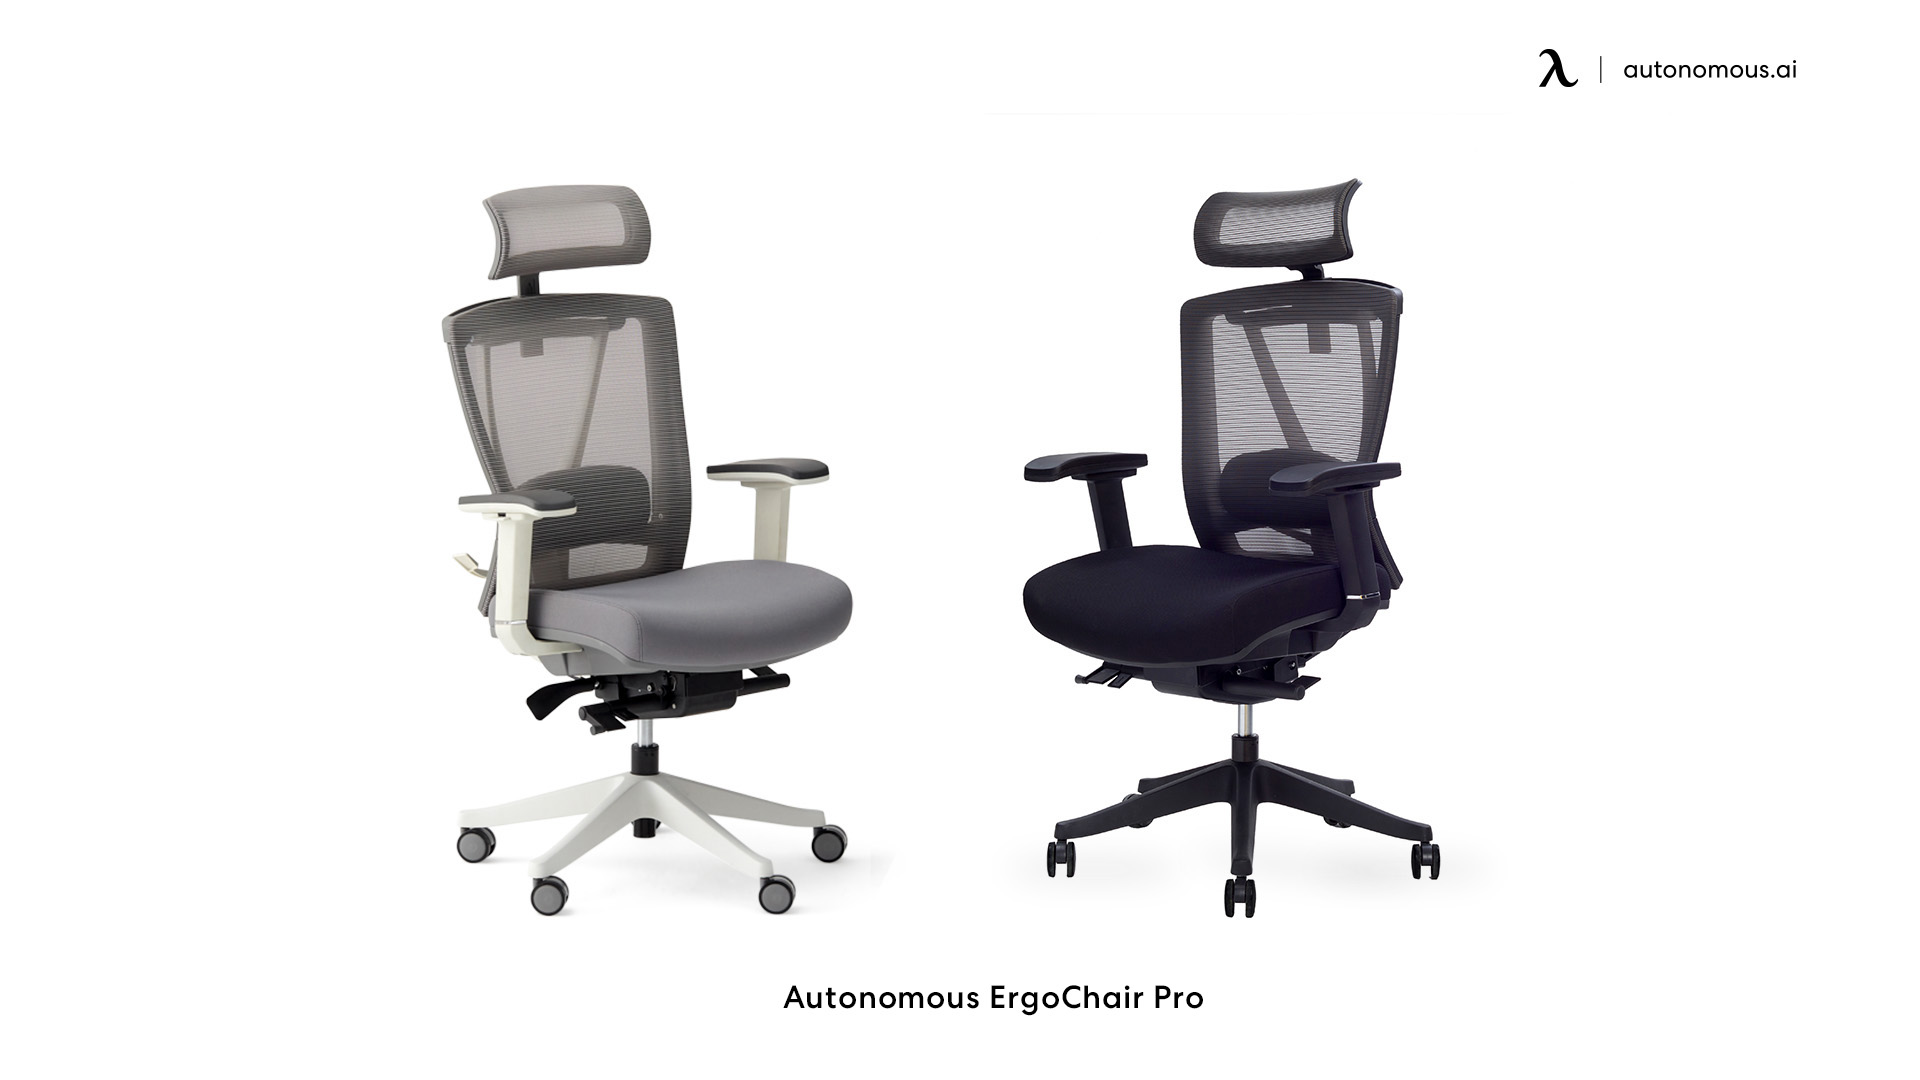 ErgoChair Pro office chairs for leg circulation